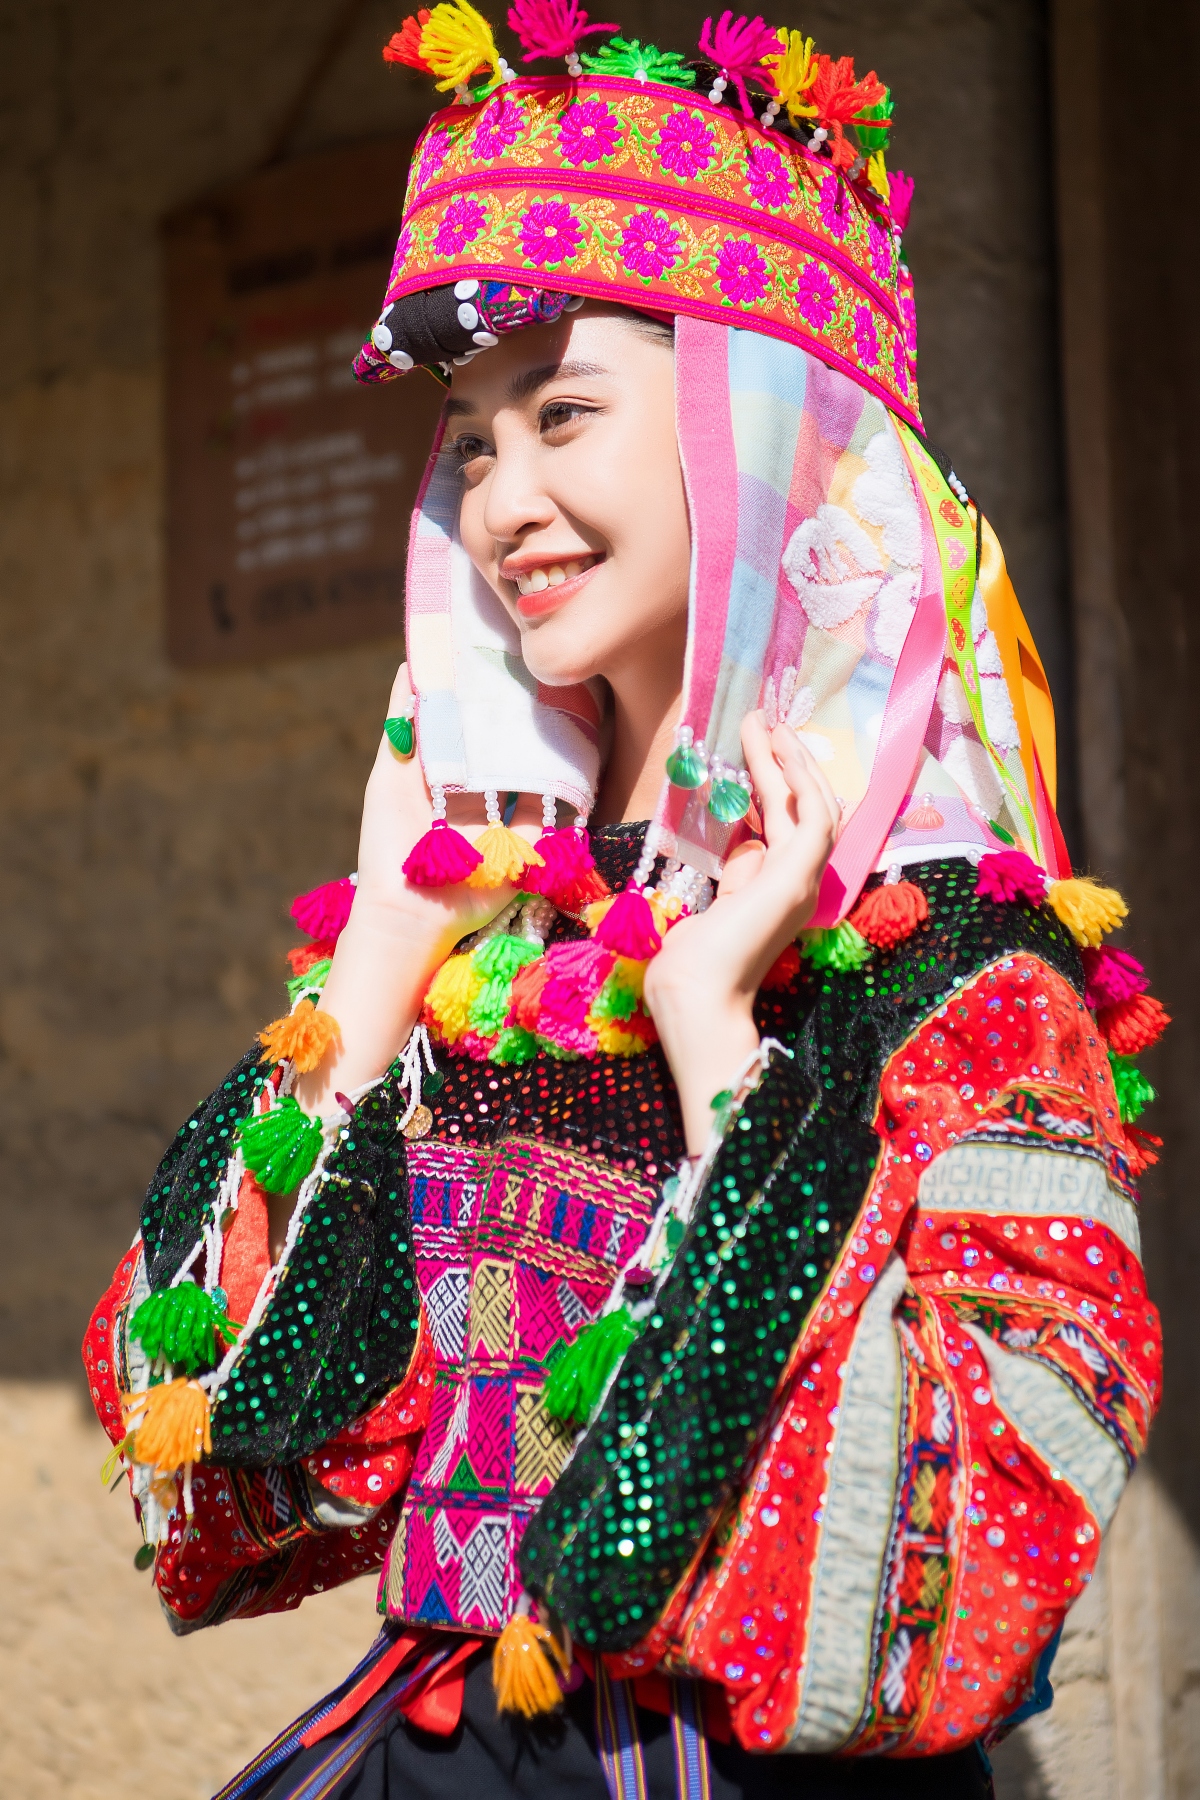 Hoa hậu Nông Thúy Hằng xinh đẹp khi làm thiện nguyện ở Hà Giang